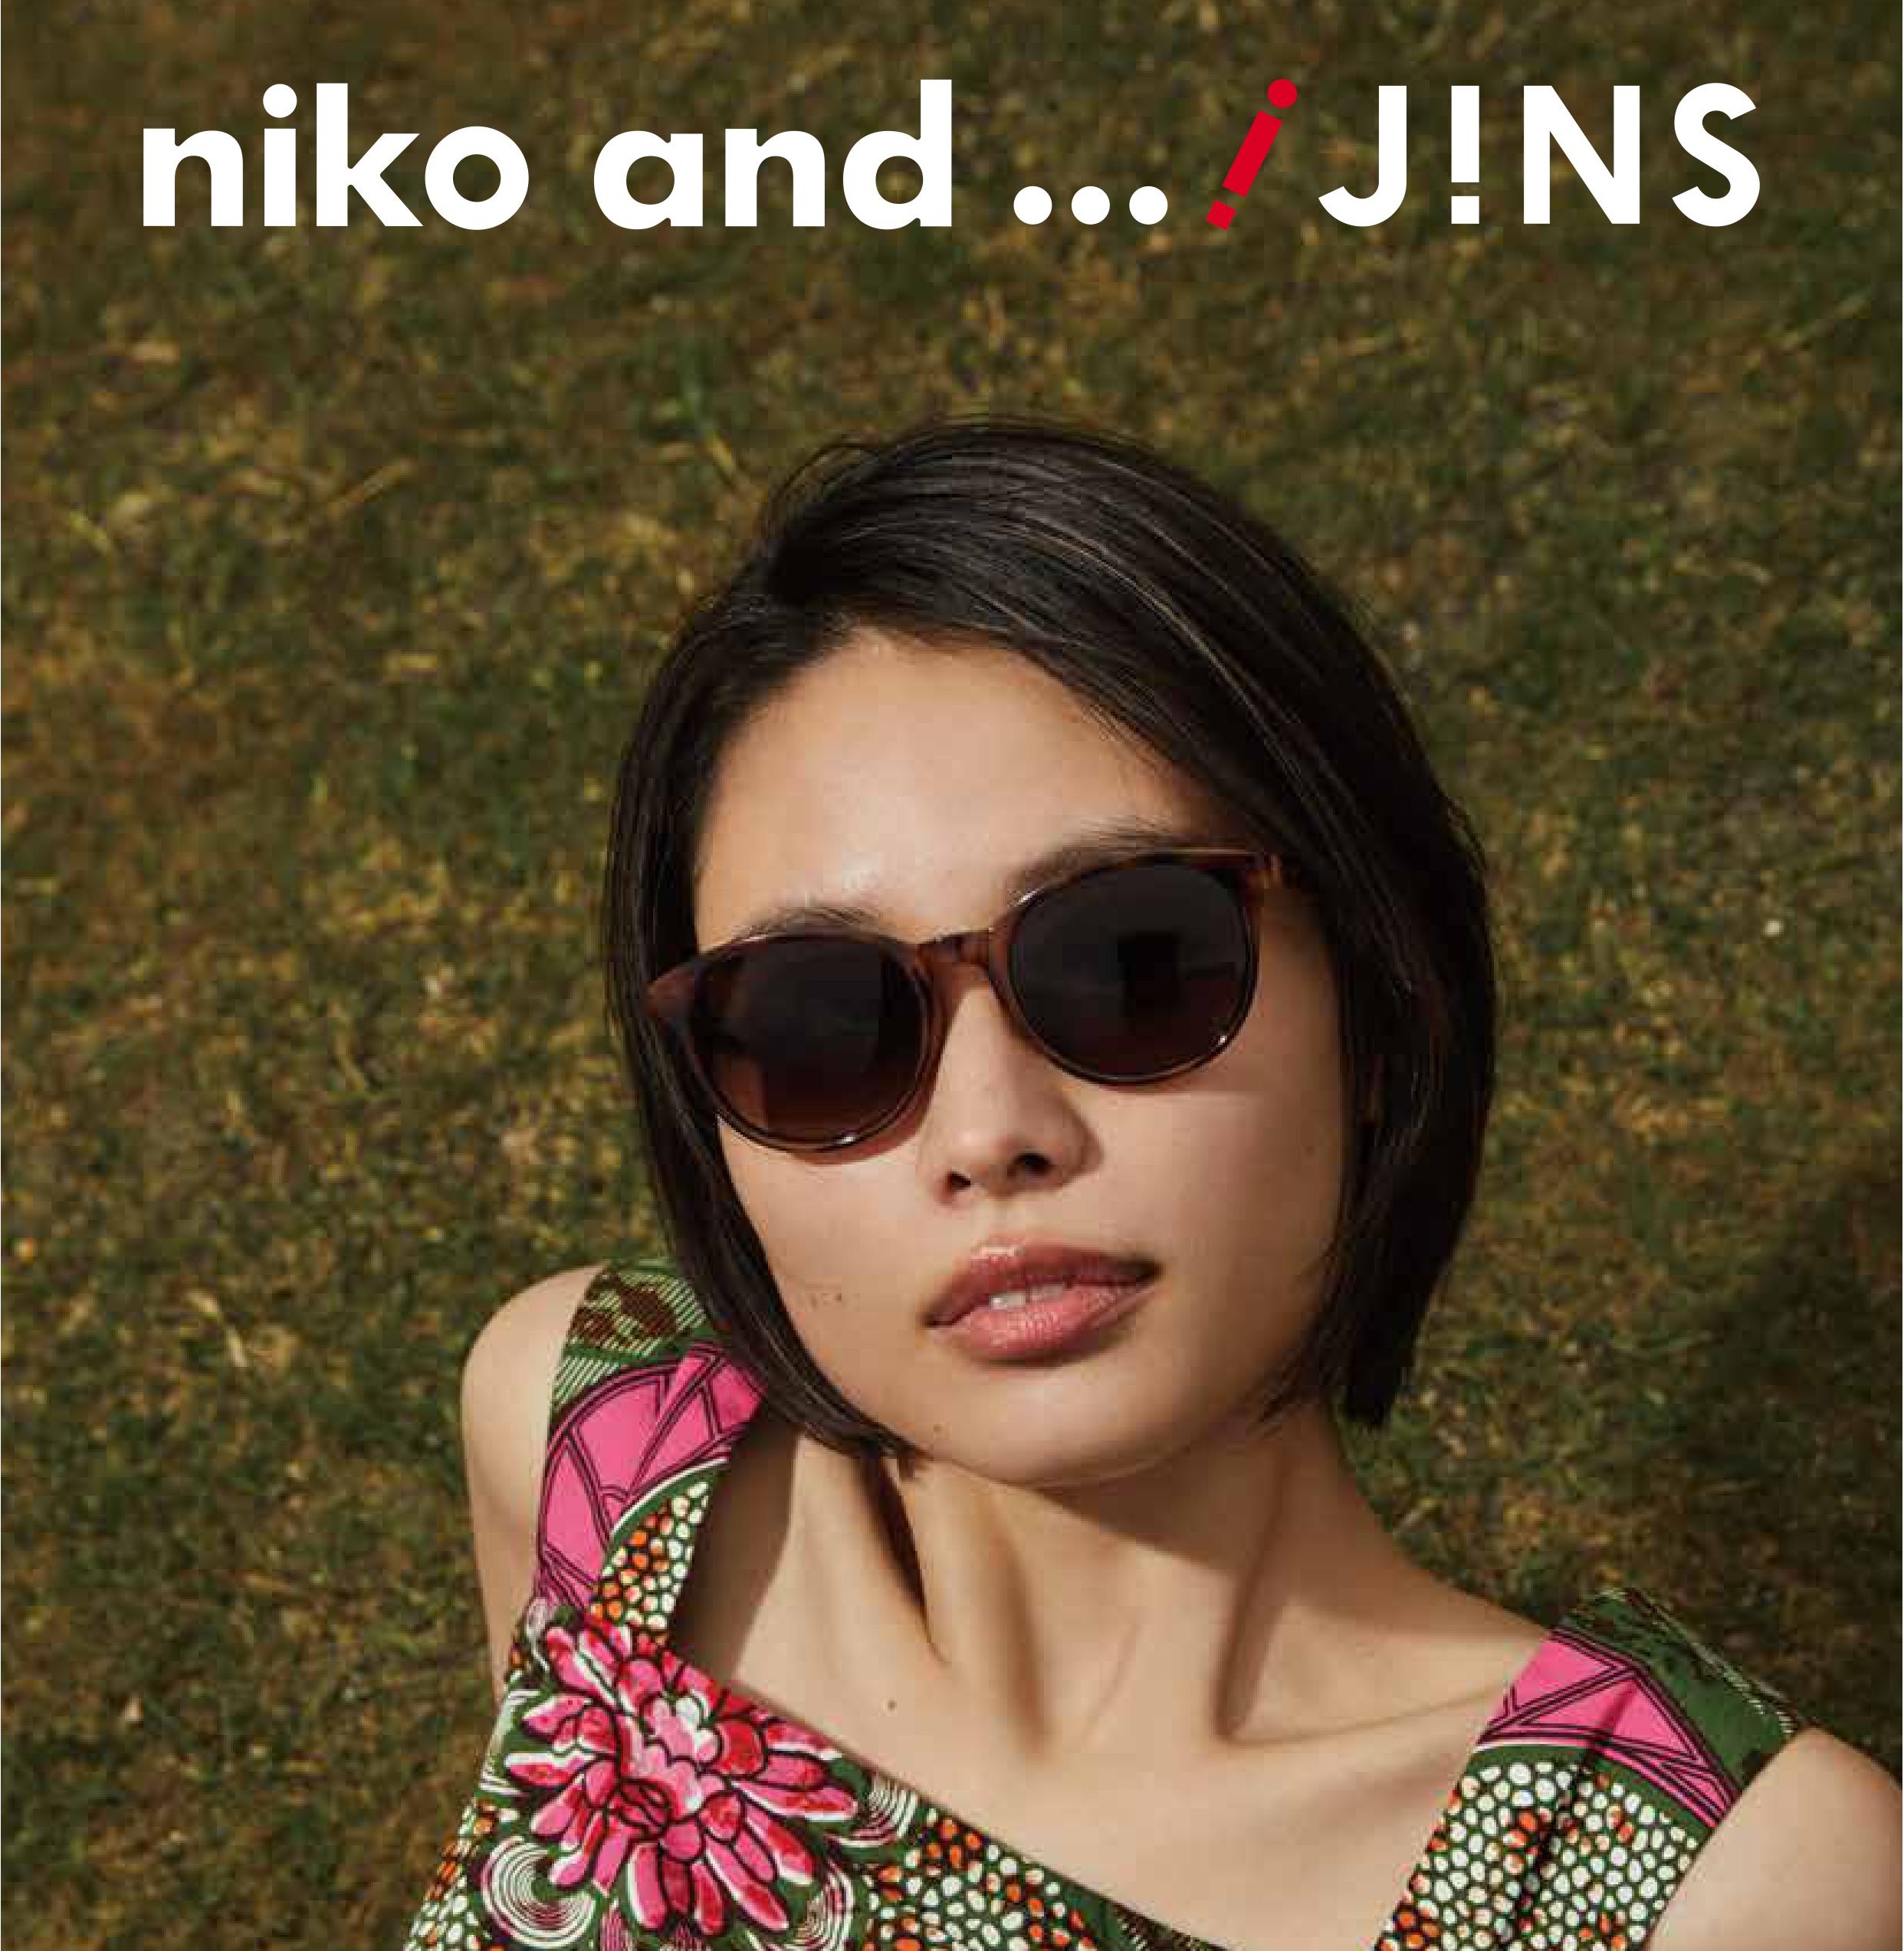 Niko And Jins 第5弾となるコラボ商品を4月27日 土 より販売開始します 株式会社アダストリアのプレスリリース